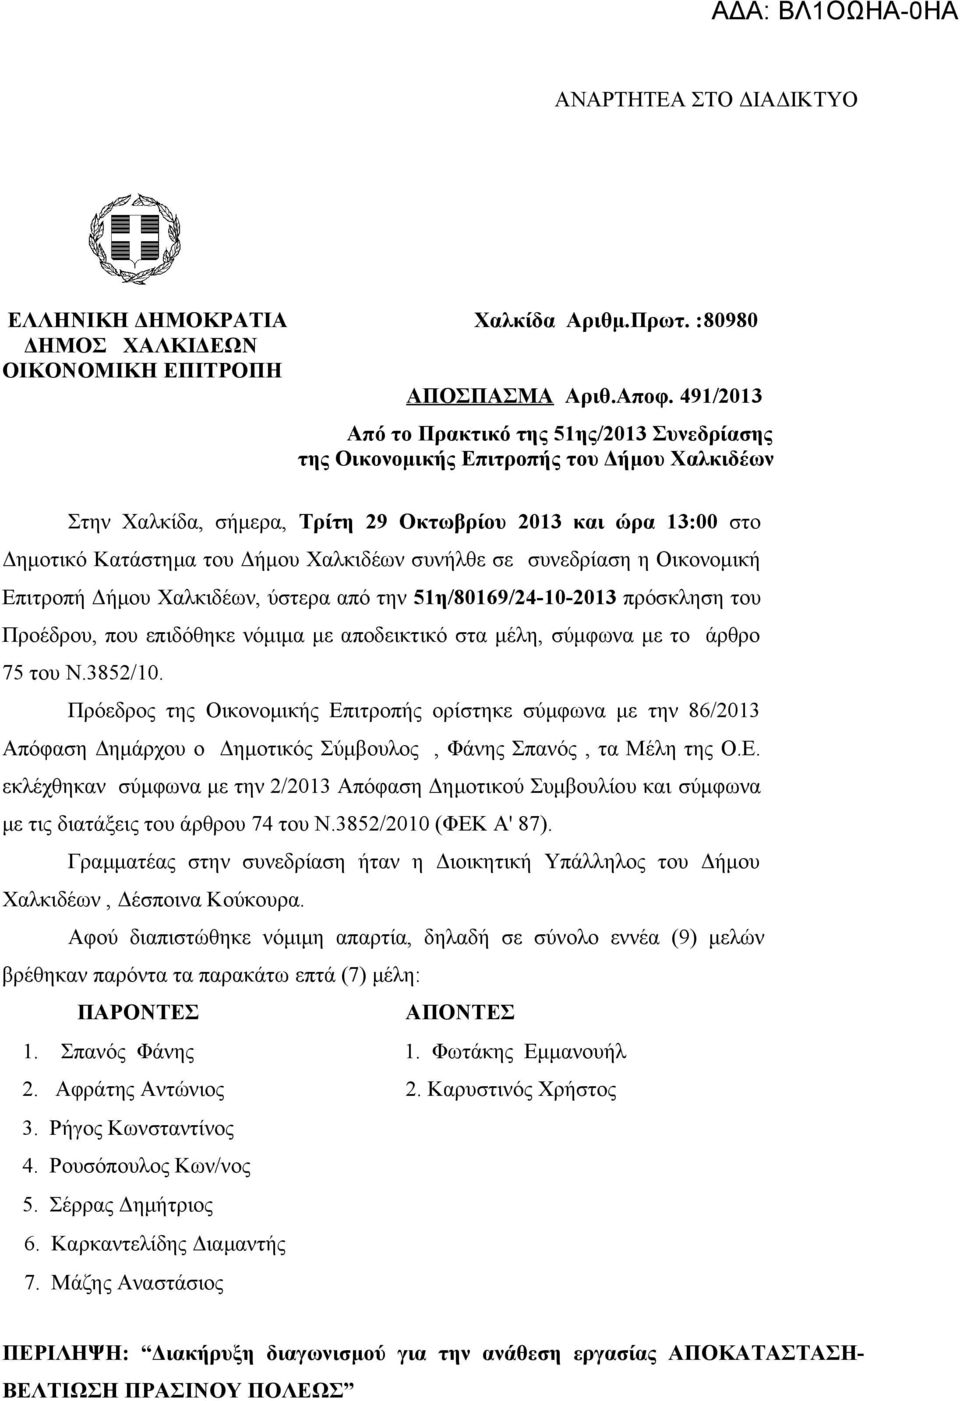 συνήλθε σε συνεδρίαση η Οικονομική Επιτροπή Δήμου Χαλκιδέων, ύστερα από την 51η/80169/24-10-2013 πρόσκληση του Προέδρου, που επιδόθηκε νόμιμα με αποδεικτικό στα μέλη, σύμφωνα με το άρθρο 75 του Ν.